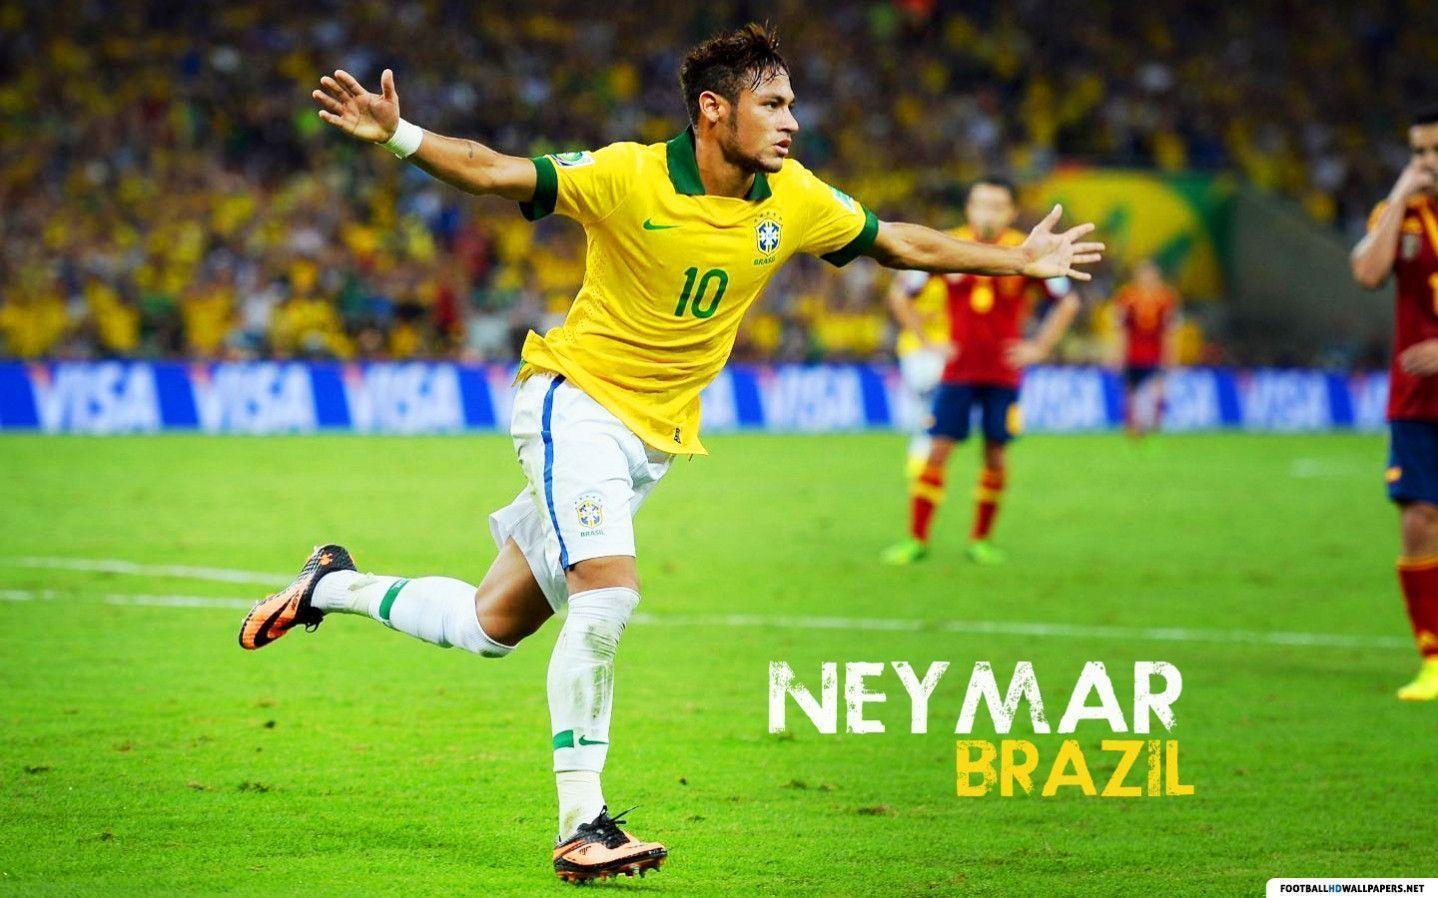 Neymar HD Brazil 2014 football matches wallpaper